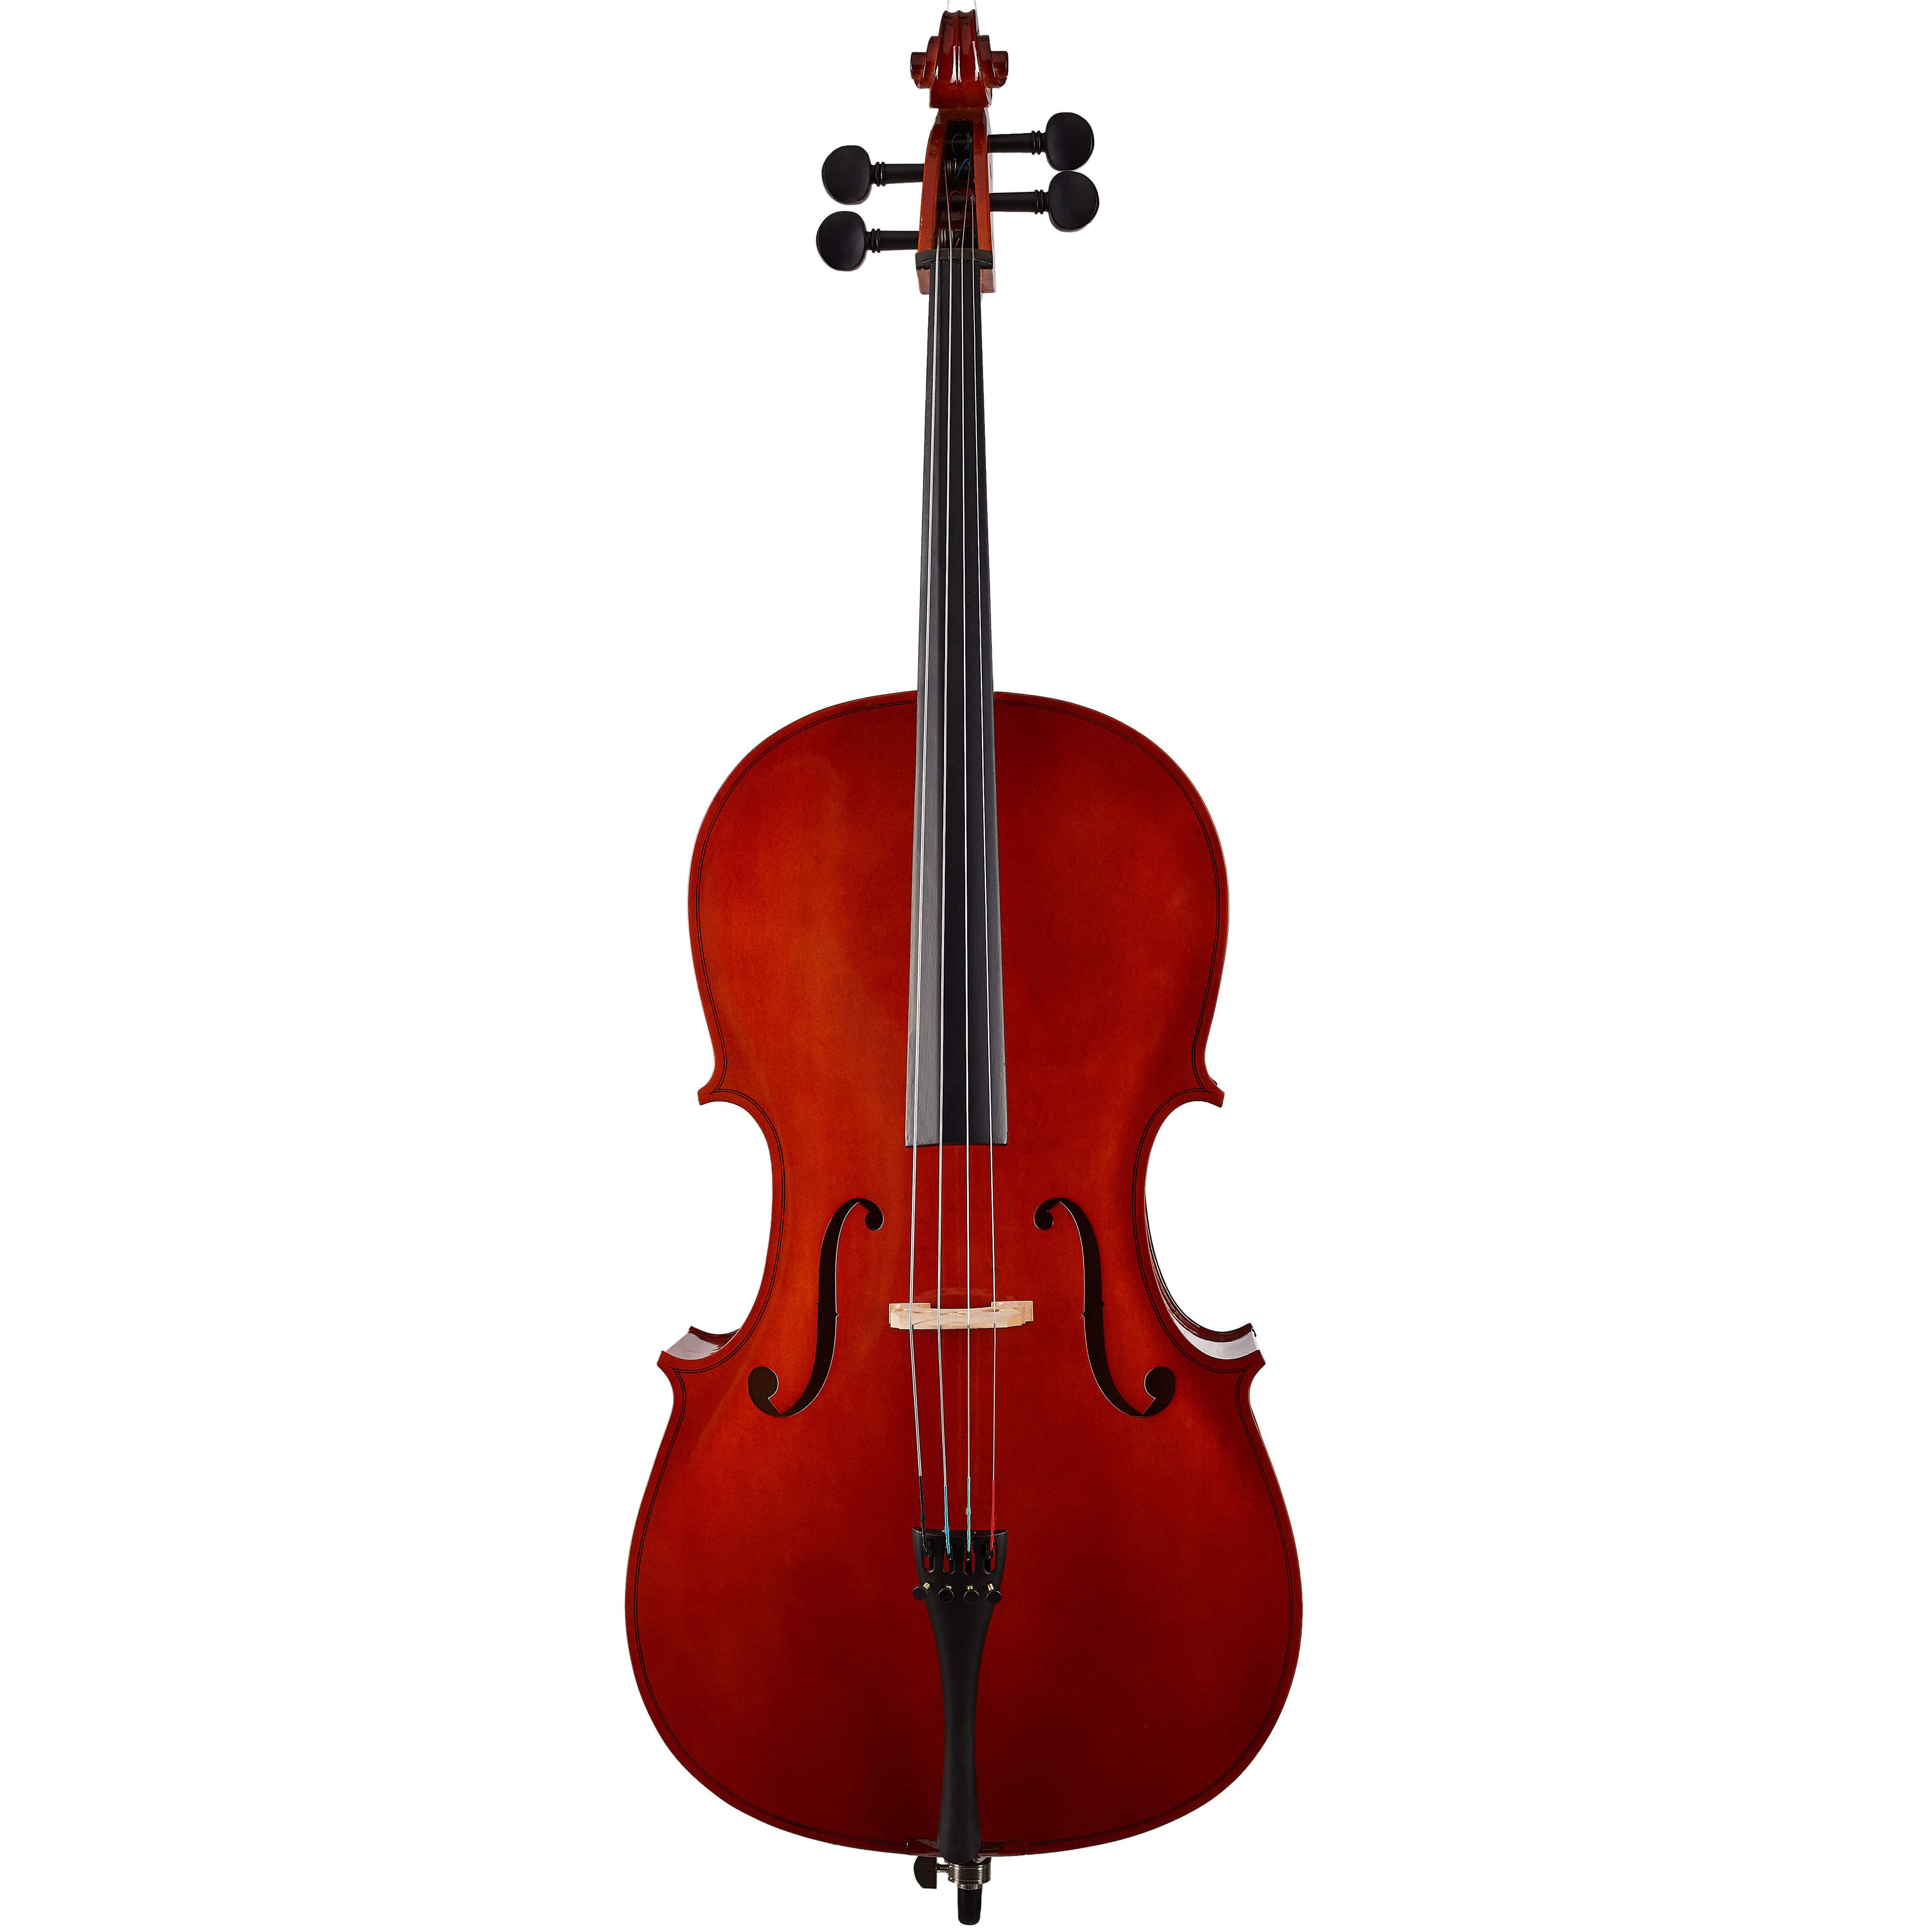 SOUNDSATION PCE-18 violončelo | Obrázok 1 | eplay.sk